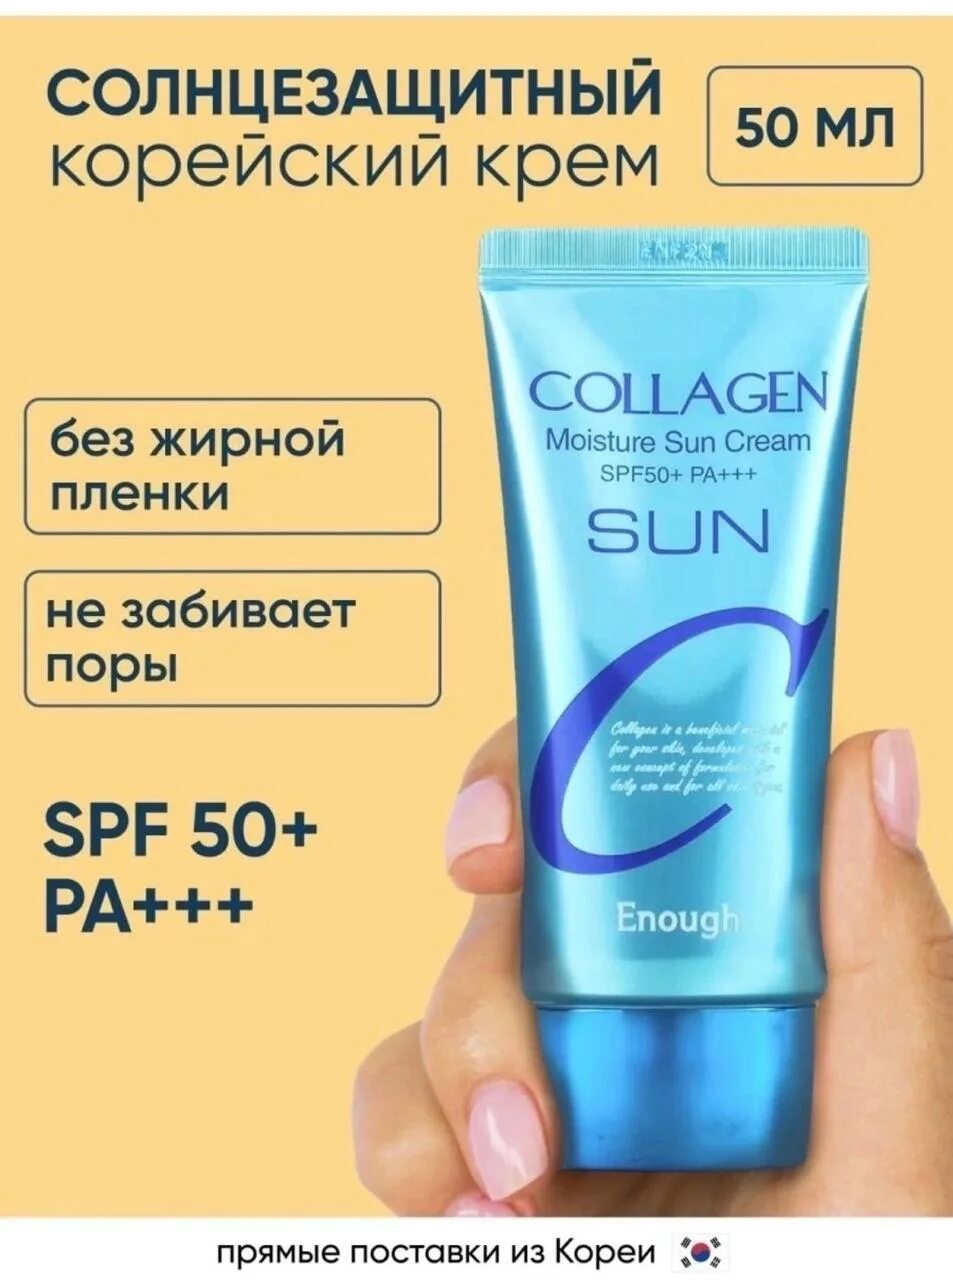 Коллаген спф. СПФ крем коллаген. Солнцезащитный крем в ультрафиолете. Enough Collagen Moisture Sun Cream spf50. Крема УФ лучей.